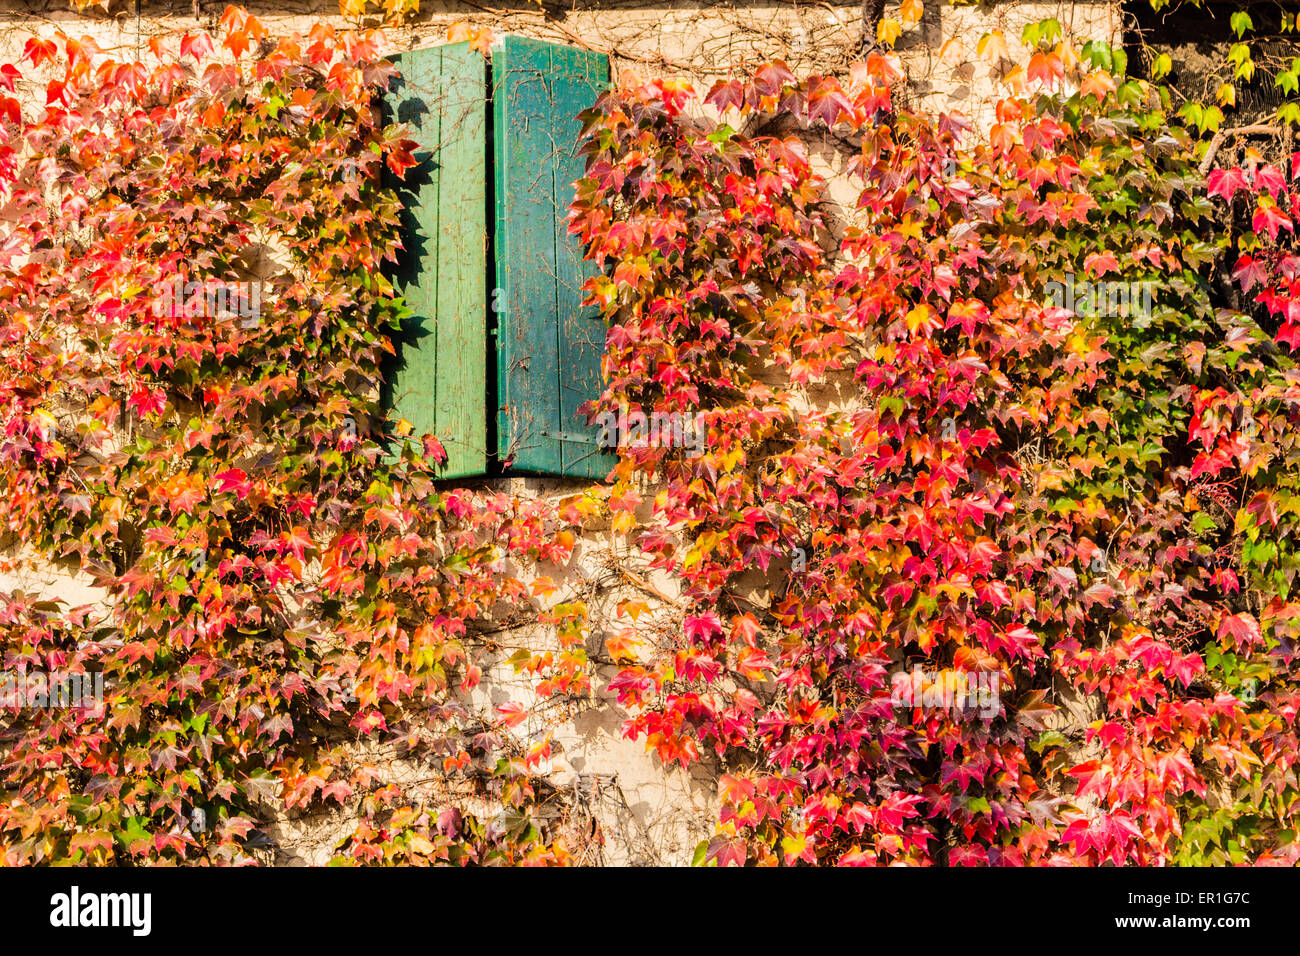 Rouge, vert et orange feuilles d'un réducteur japonais du Parthenocissus tricuspidata veitchii ou à l'automne et l'encadrement entourant un old grunge fenêtre dans une maison typique de campagne italienne d'agriculteurs Banque D'Images